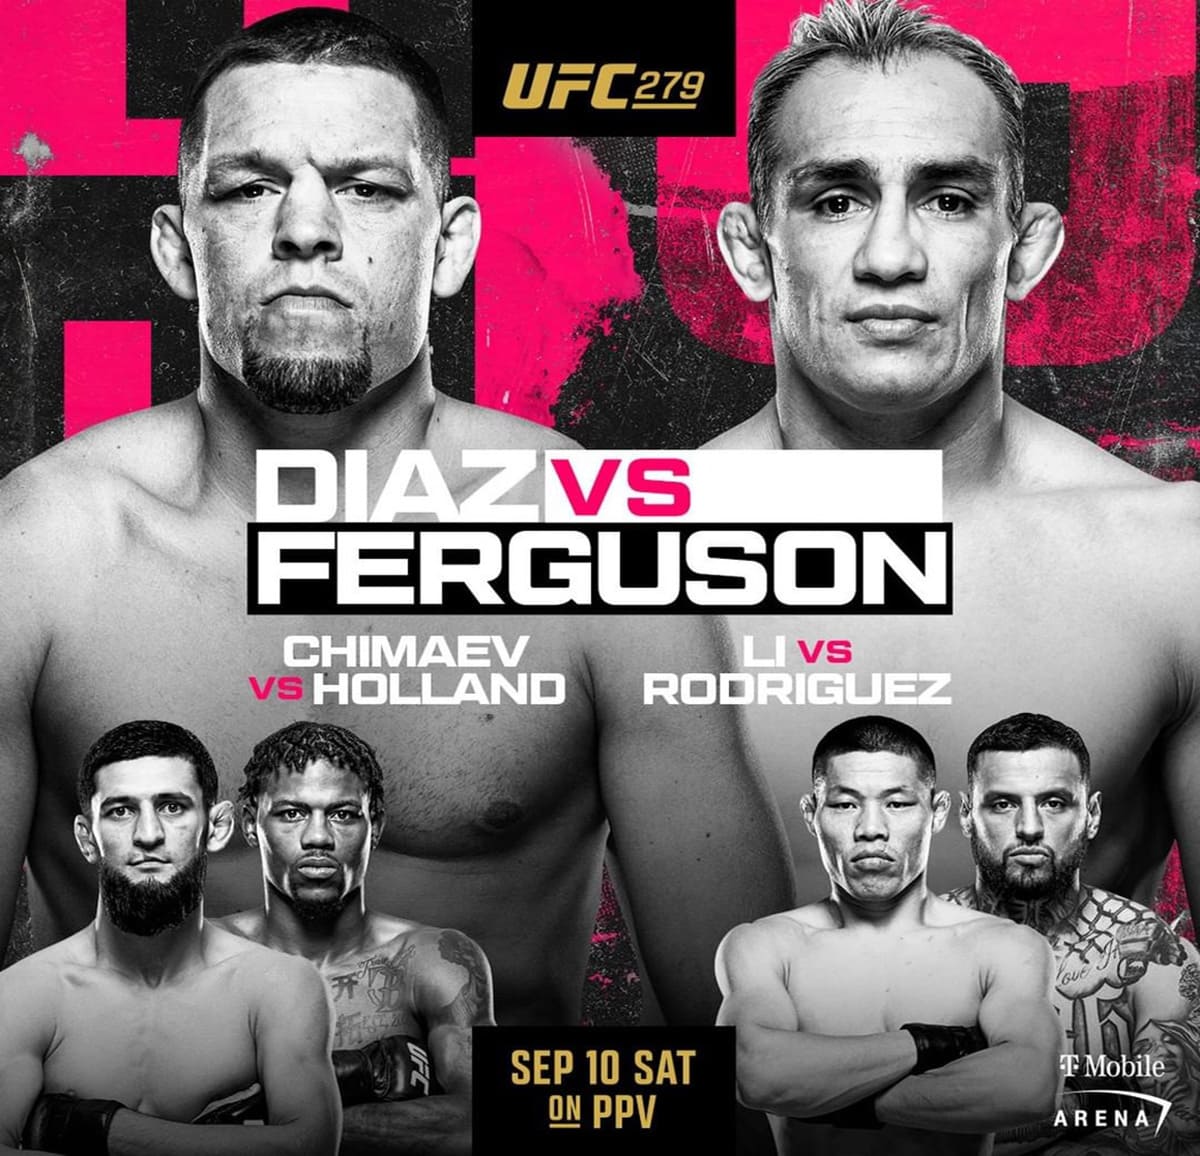 UFC 279: Диас - Фергюсон дата проведения, кард, участники и результаты